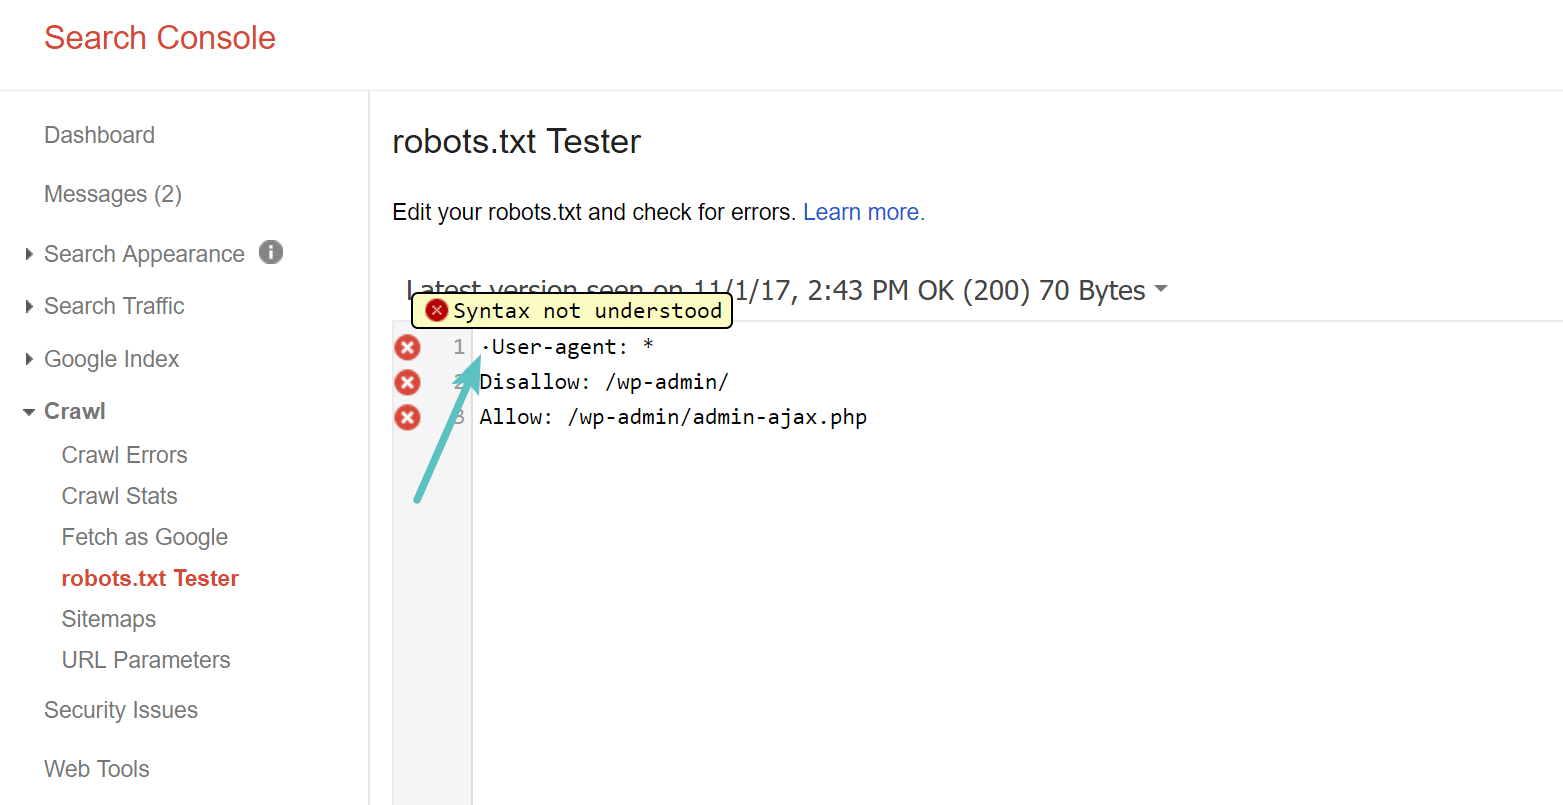 Captura de pantalla que muestra la herramienta de prueba robots.txt en la consola de búsqueda de google mostrando errores